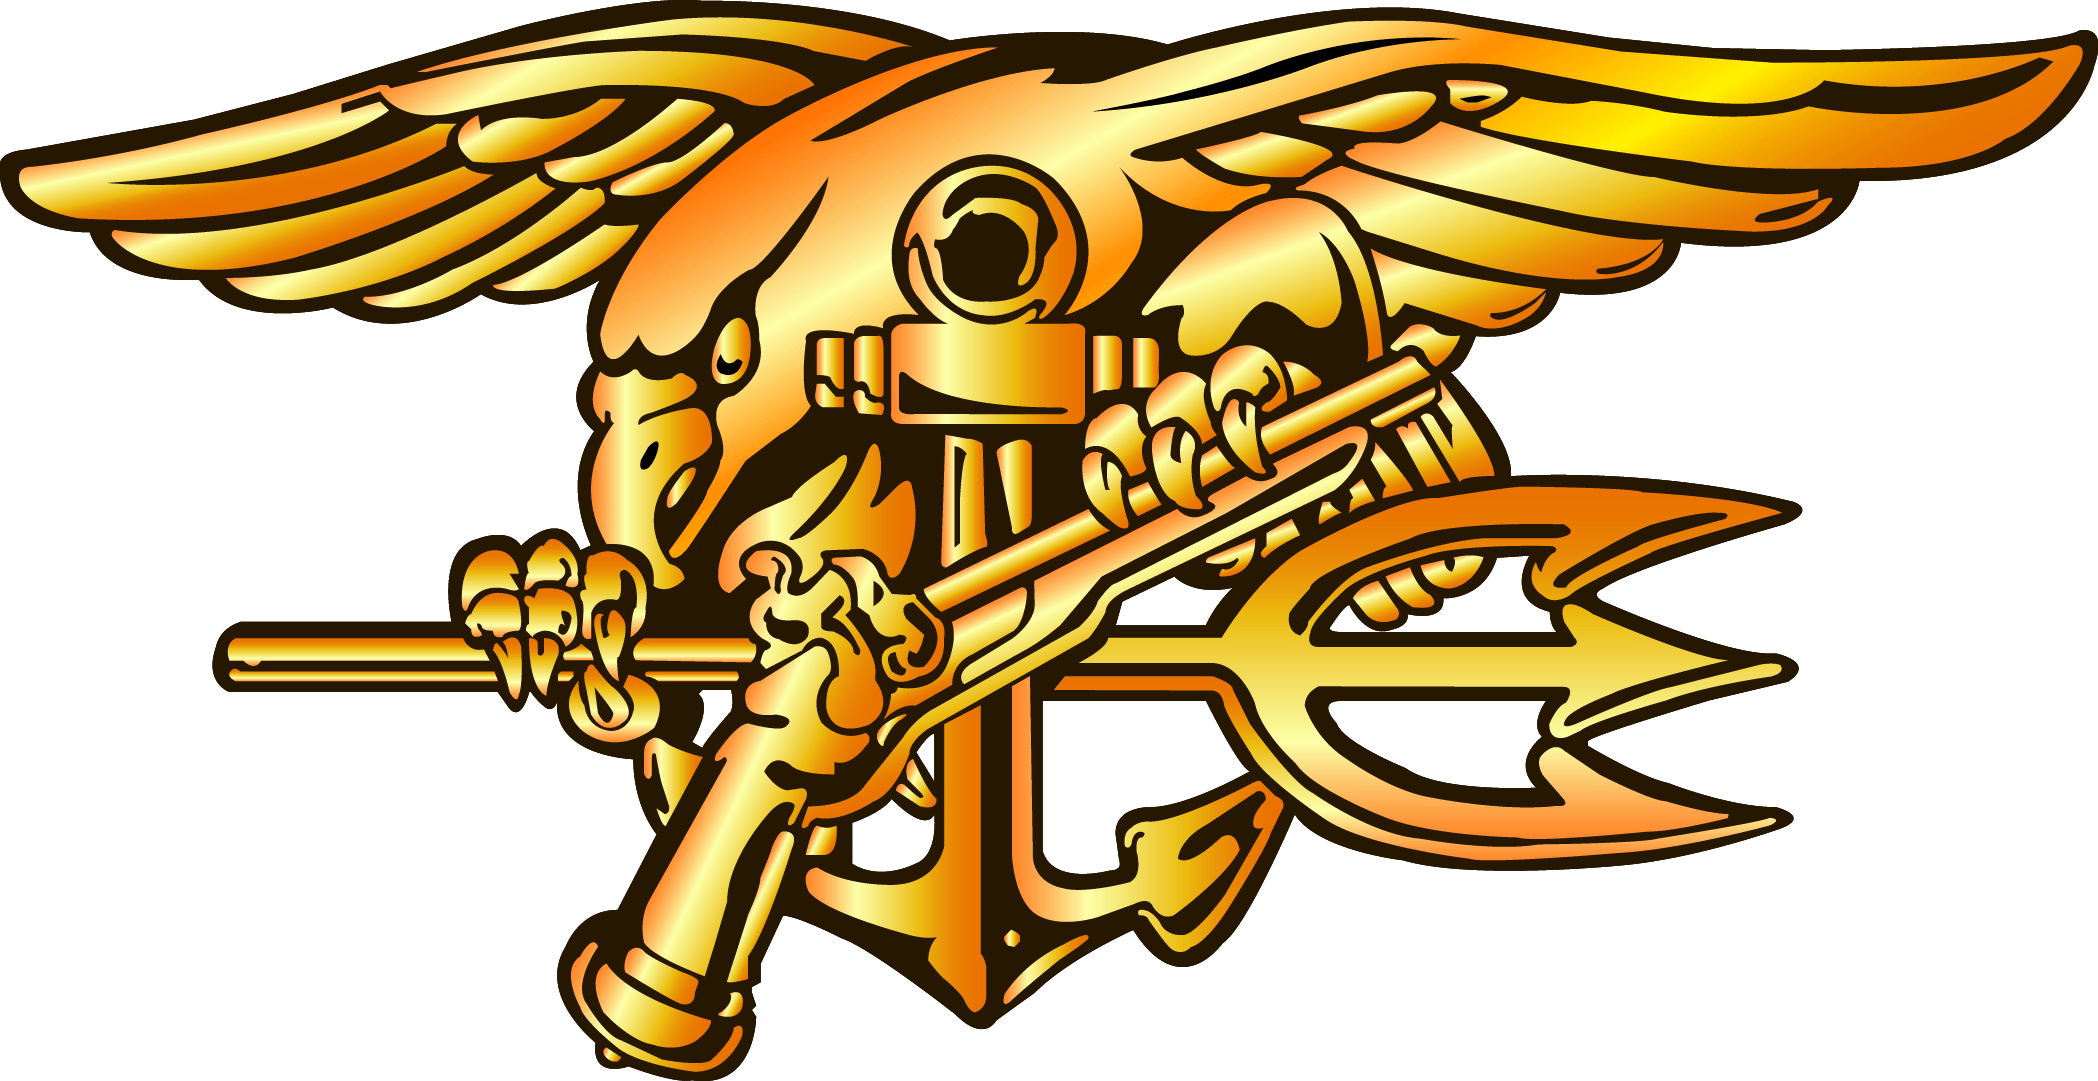 Seal Trident Logo - Navy SEAL Trident Logo N2 free image